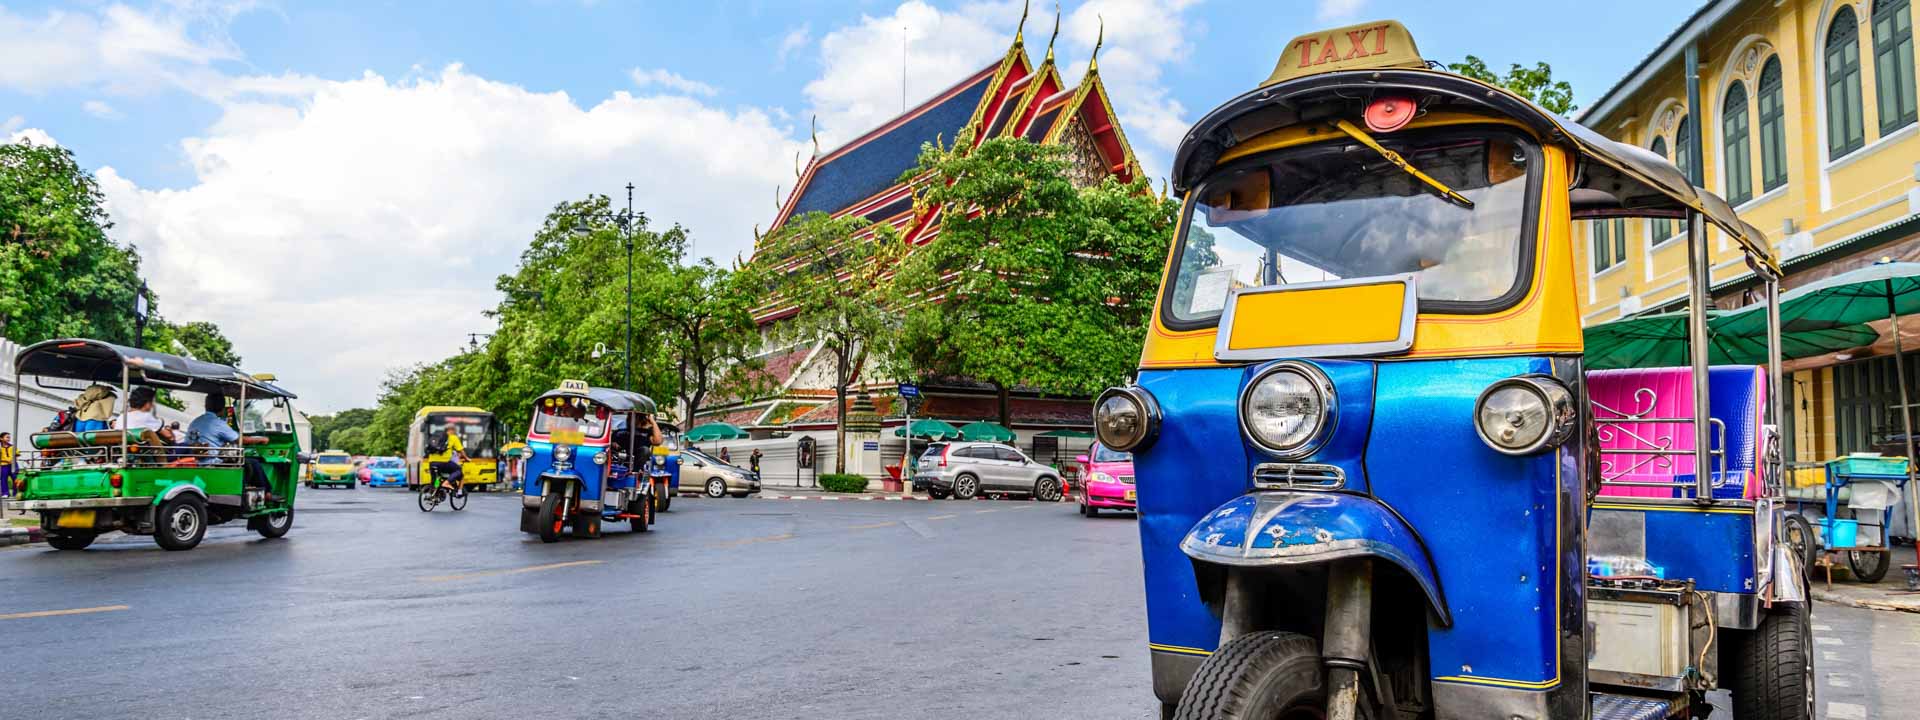 Vacanza stupenda in Vietnam e Thaiandia 19 giorni